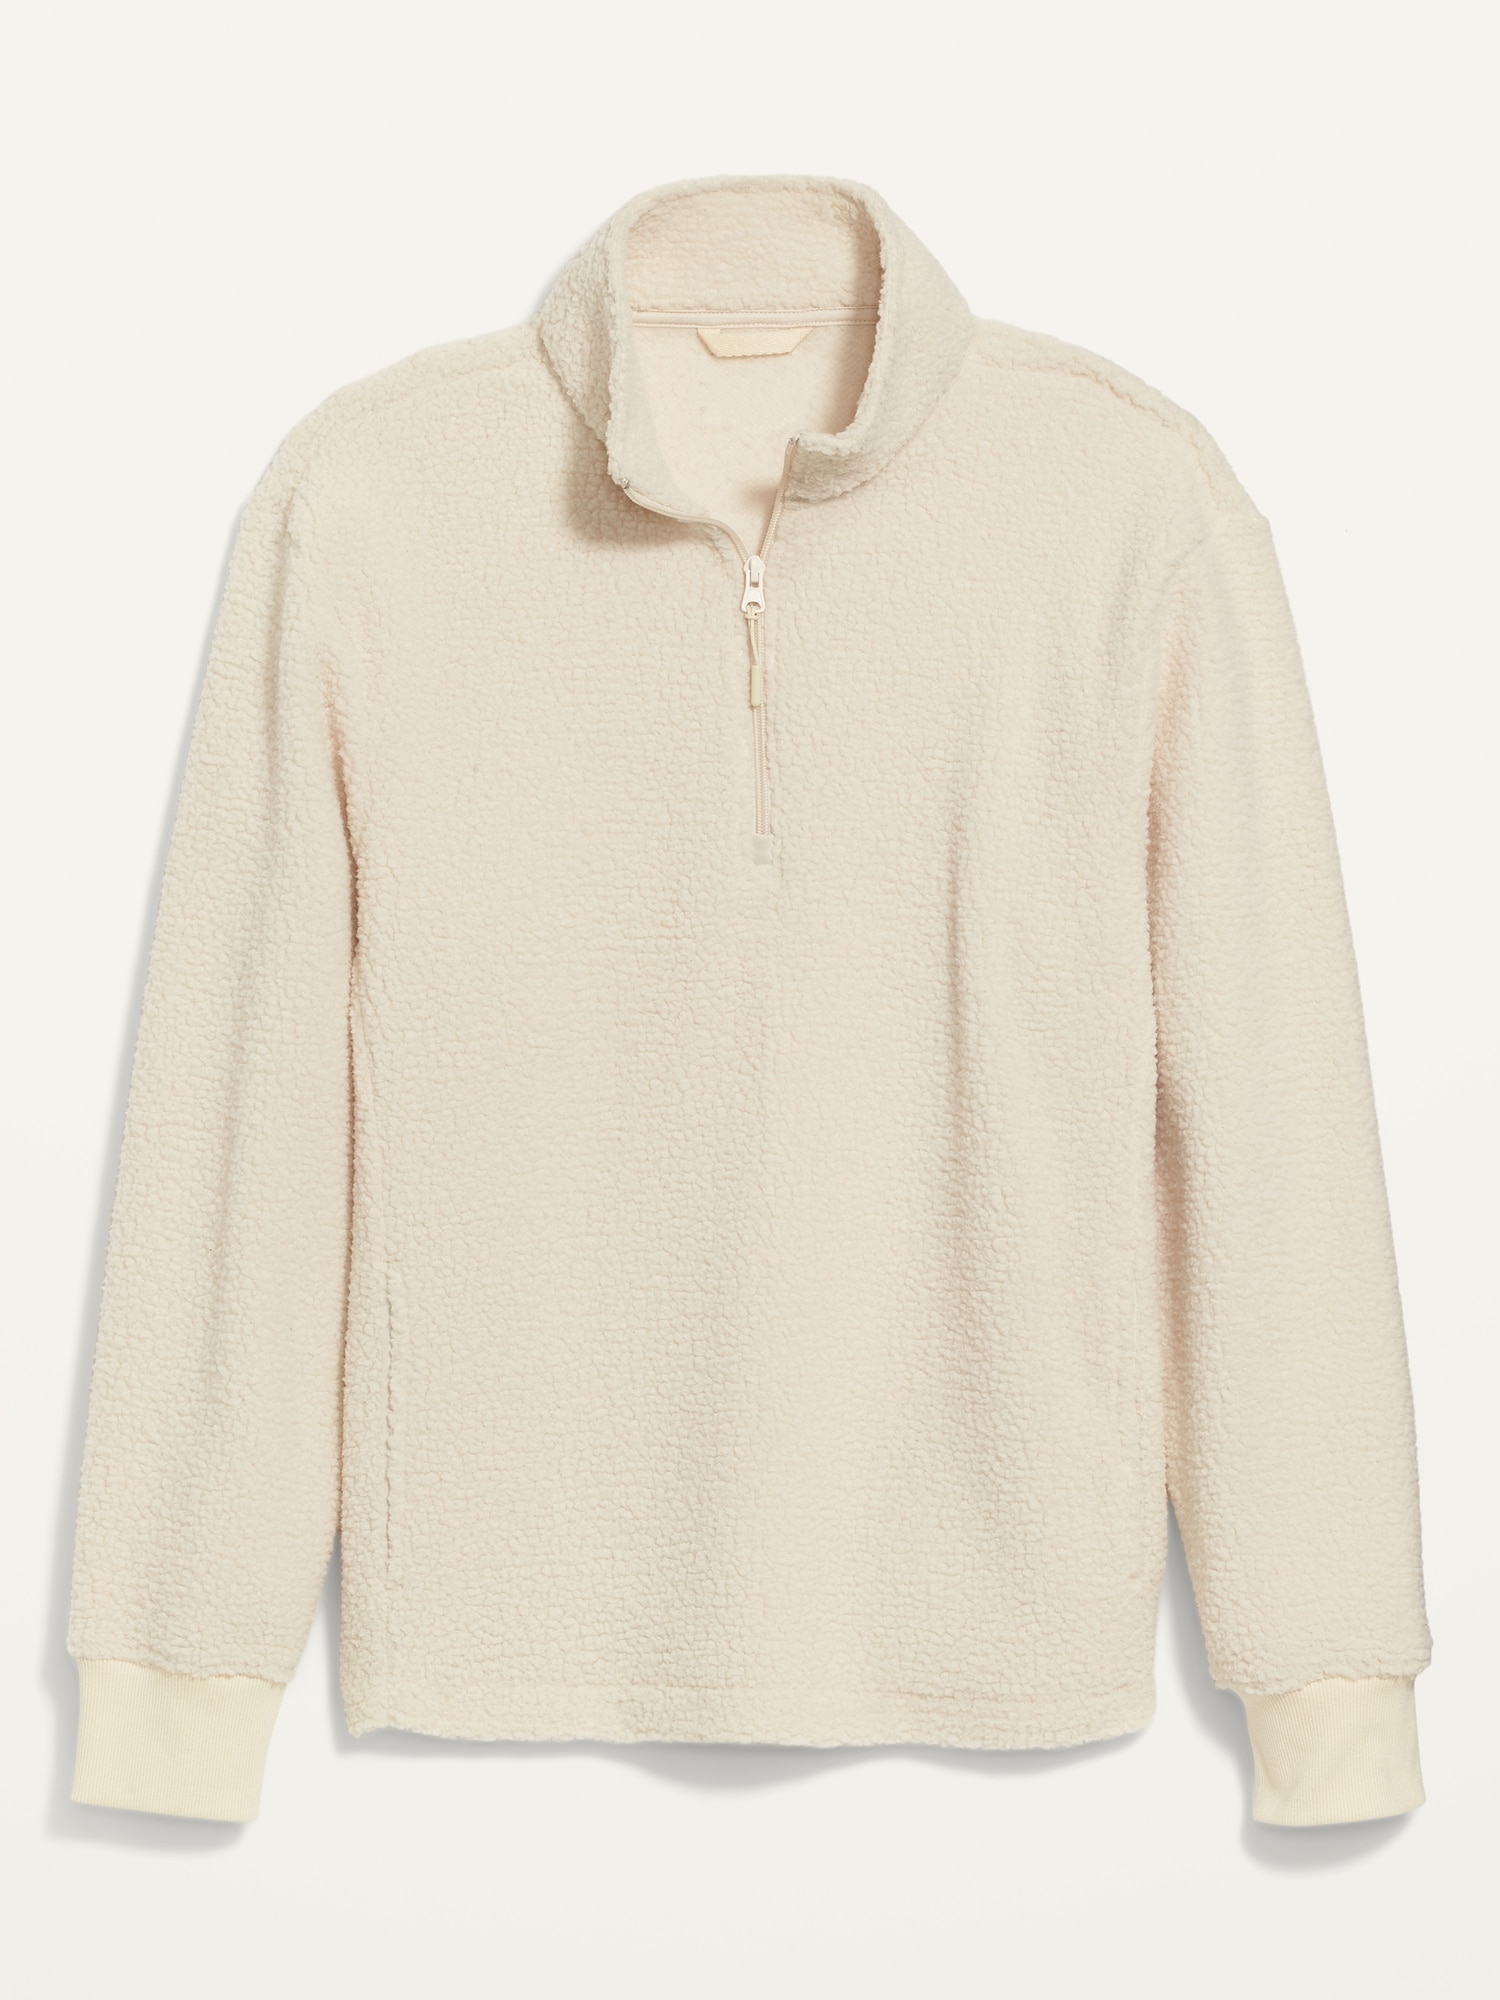 Cozy Sherpa Quarter-Zip Sweatshirt for Men | Old Navy